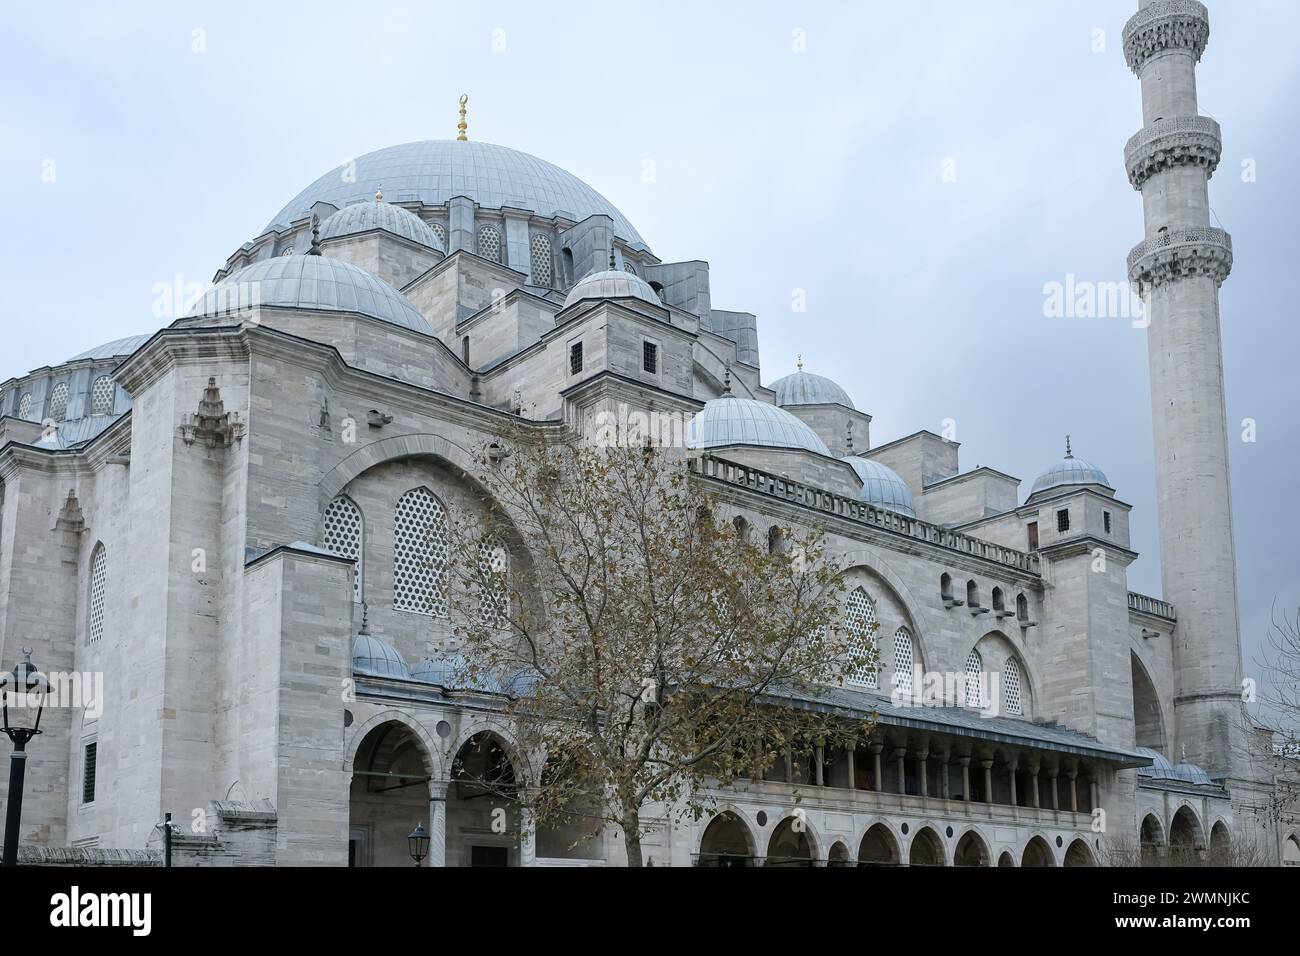 La Moschea Yeni Cami la nuova Moschea di Istanbul, Turchia. Cupole della moschea Yeni Cami in una giornata nuvolosa. Foto di viaggio, spazio per copiare il testo Foto Stock